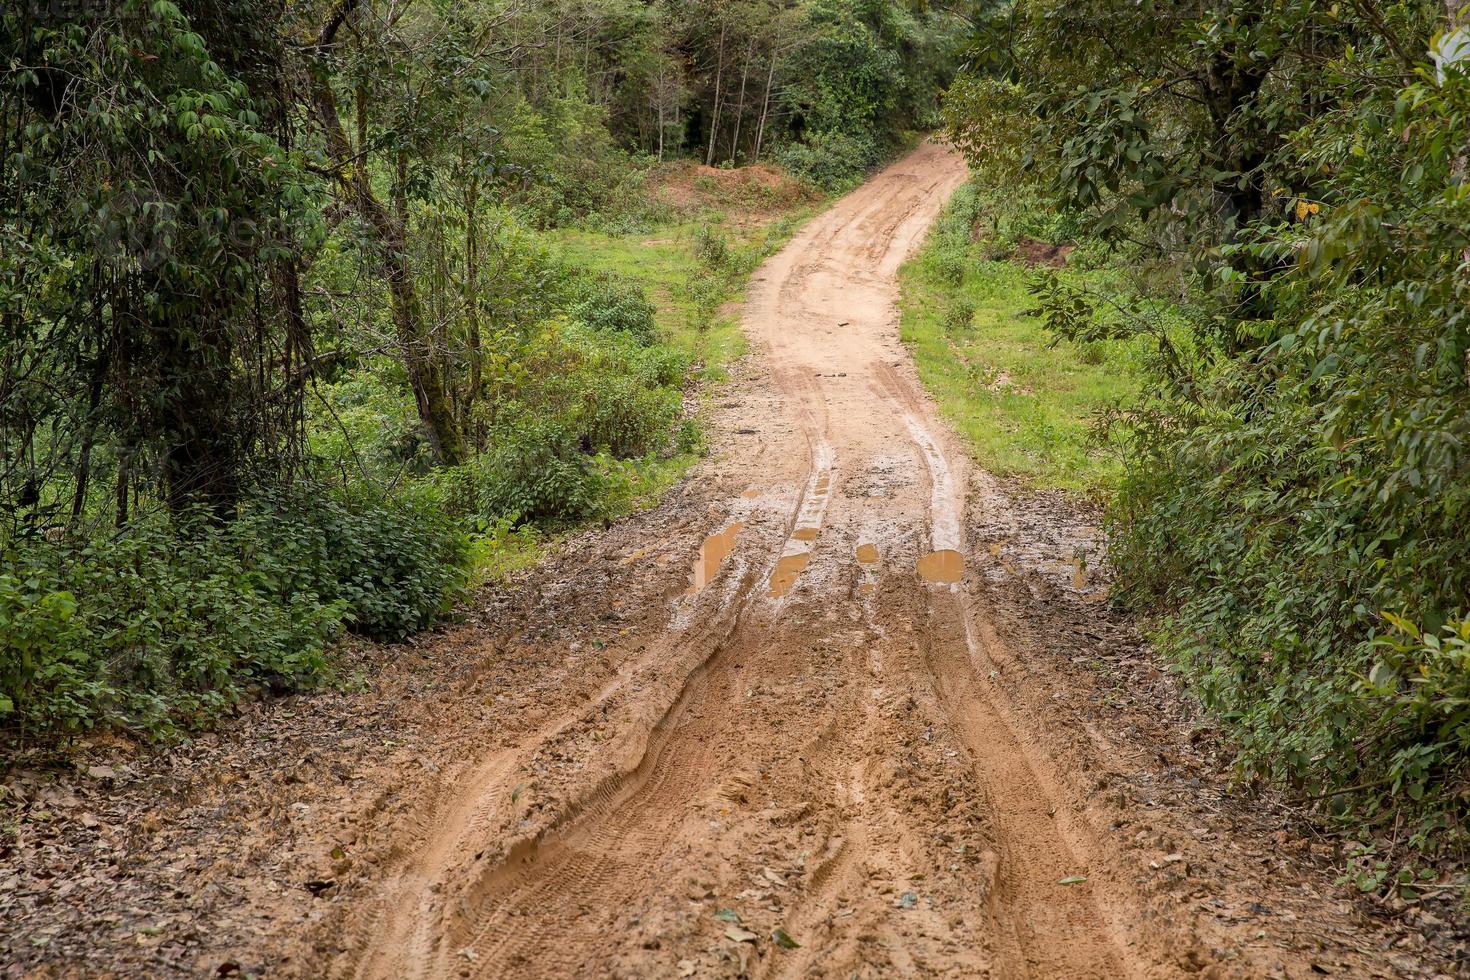 camino rural húmedo y fangoso en chiang mai, al norte de tailandia. pista sendero camino de barro en el bosque naturaleza paisaje rural. charco de arcilla marrón transporte en el país foto